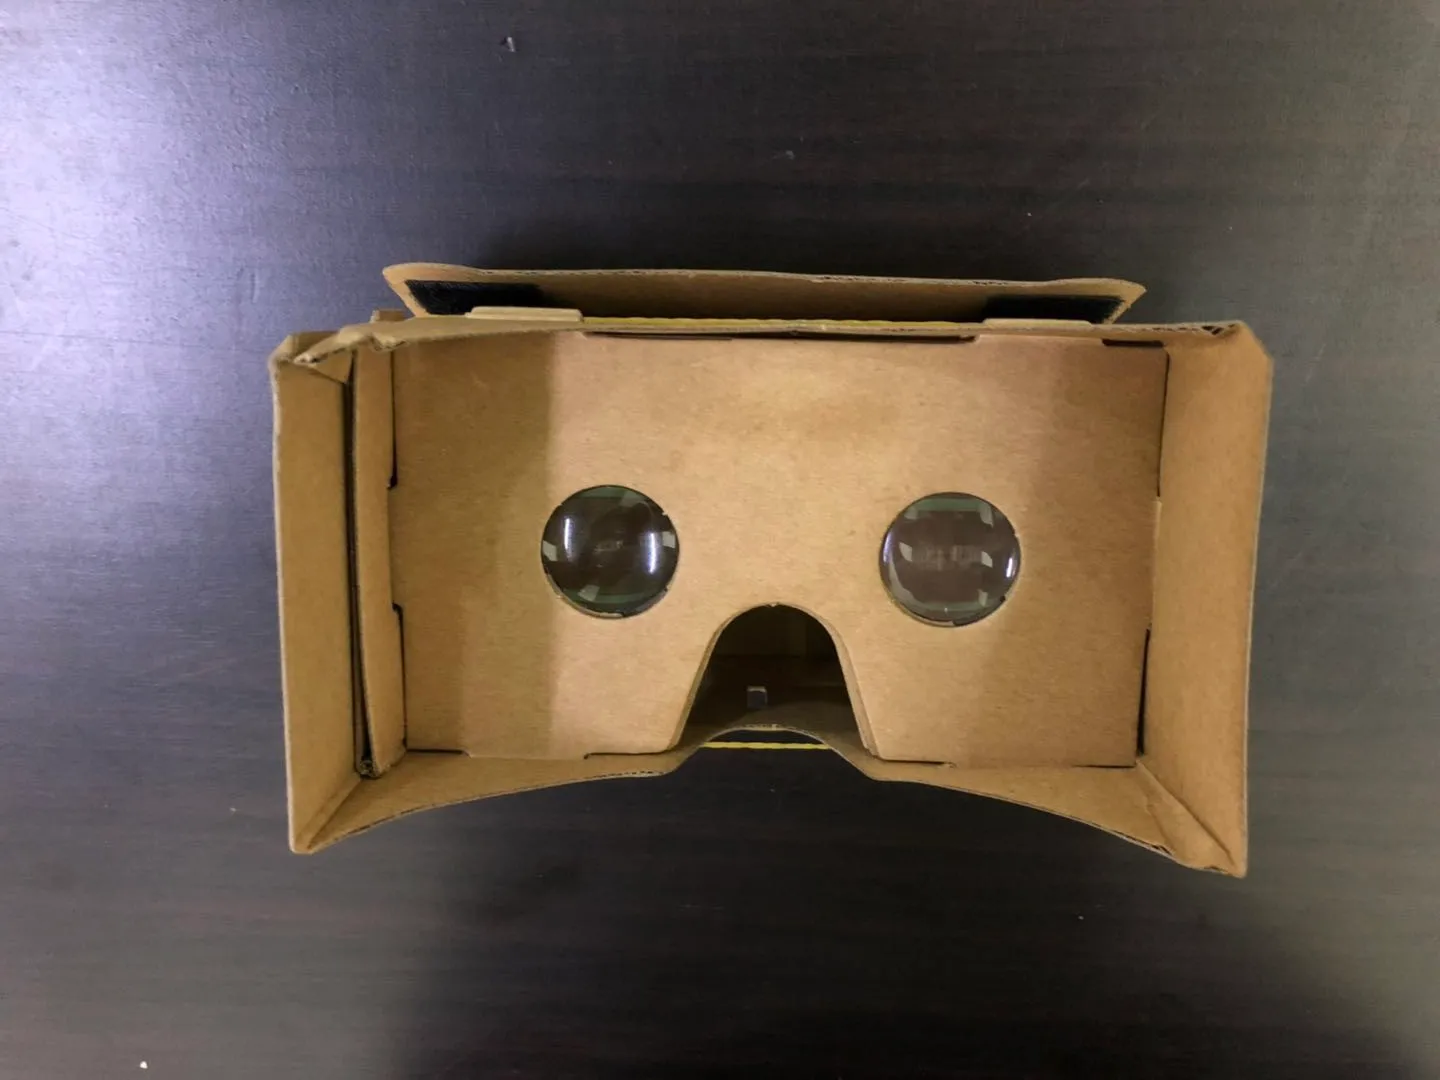 Бесплатные 3D-модели 3D Glasses VR Glasses DIY Google Cardboard Мобильный телефон Виртуальная реальность Неофициальная картонная VR Toolkit 3D Glasses CCA1785 B-XY